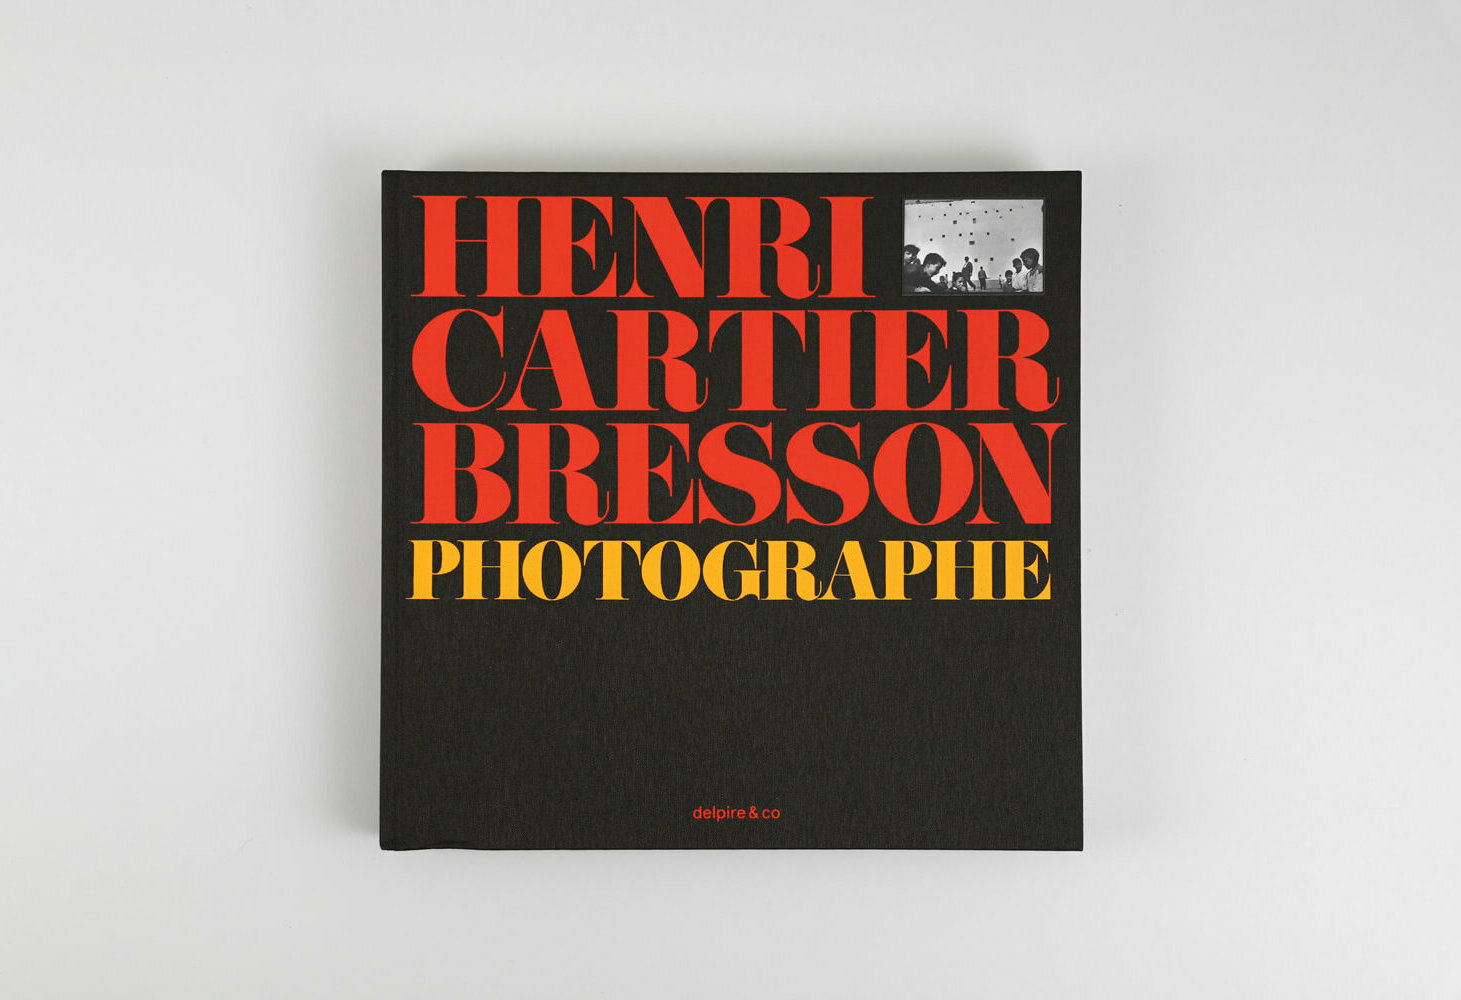 Photographe-Henri-Cartier-Bresson-delpire-and-co-cover-2